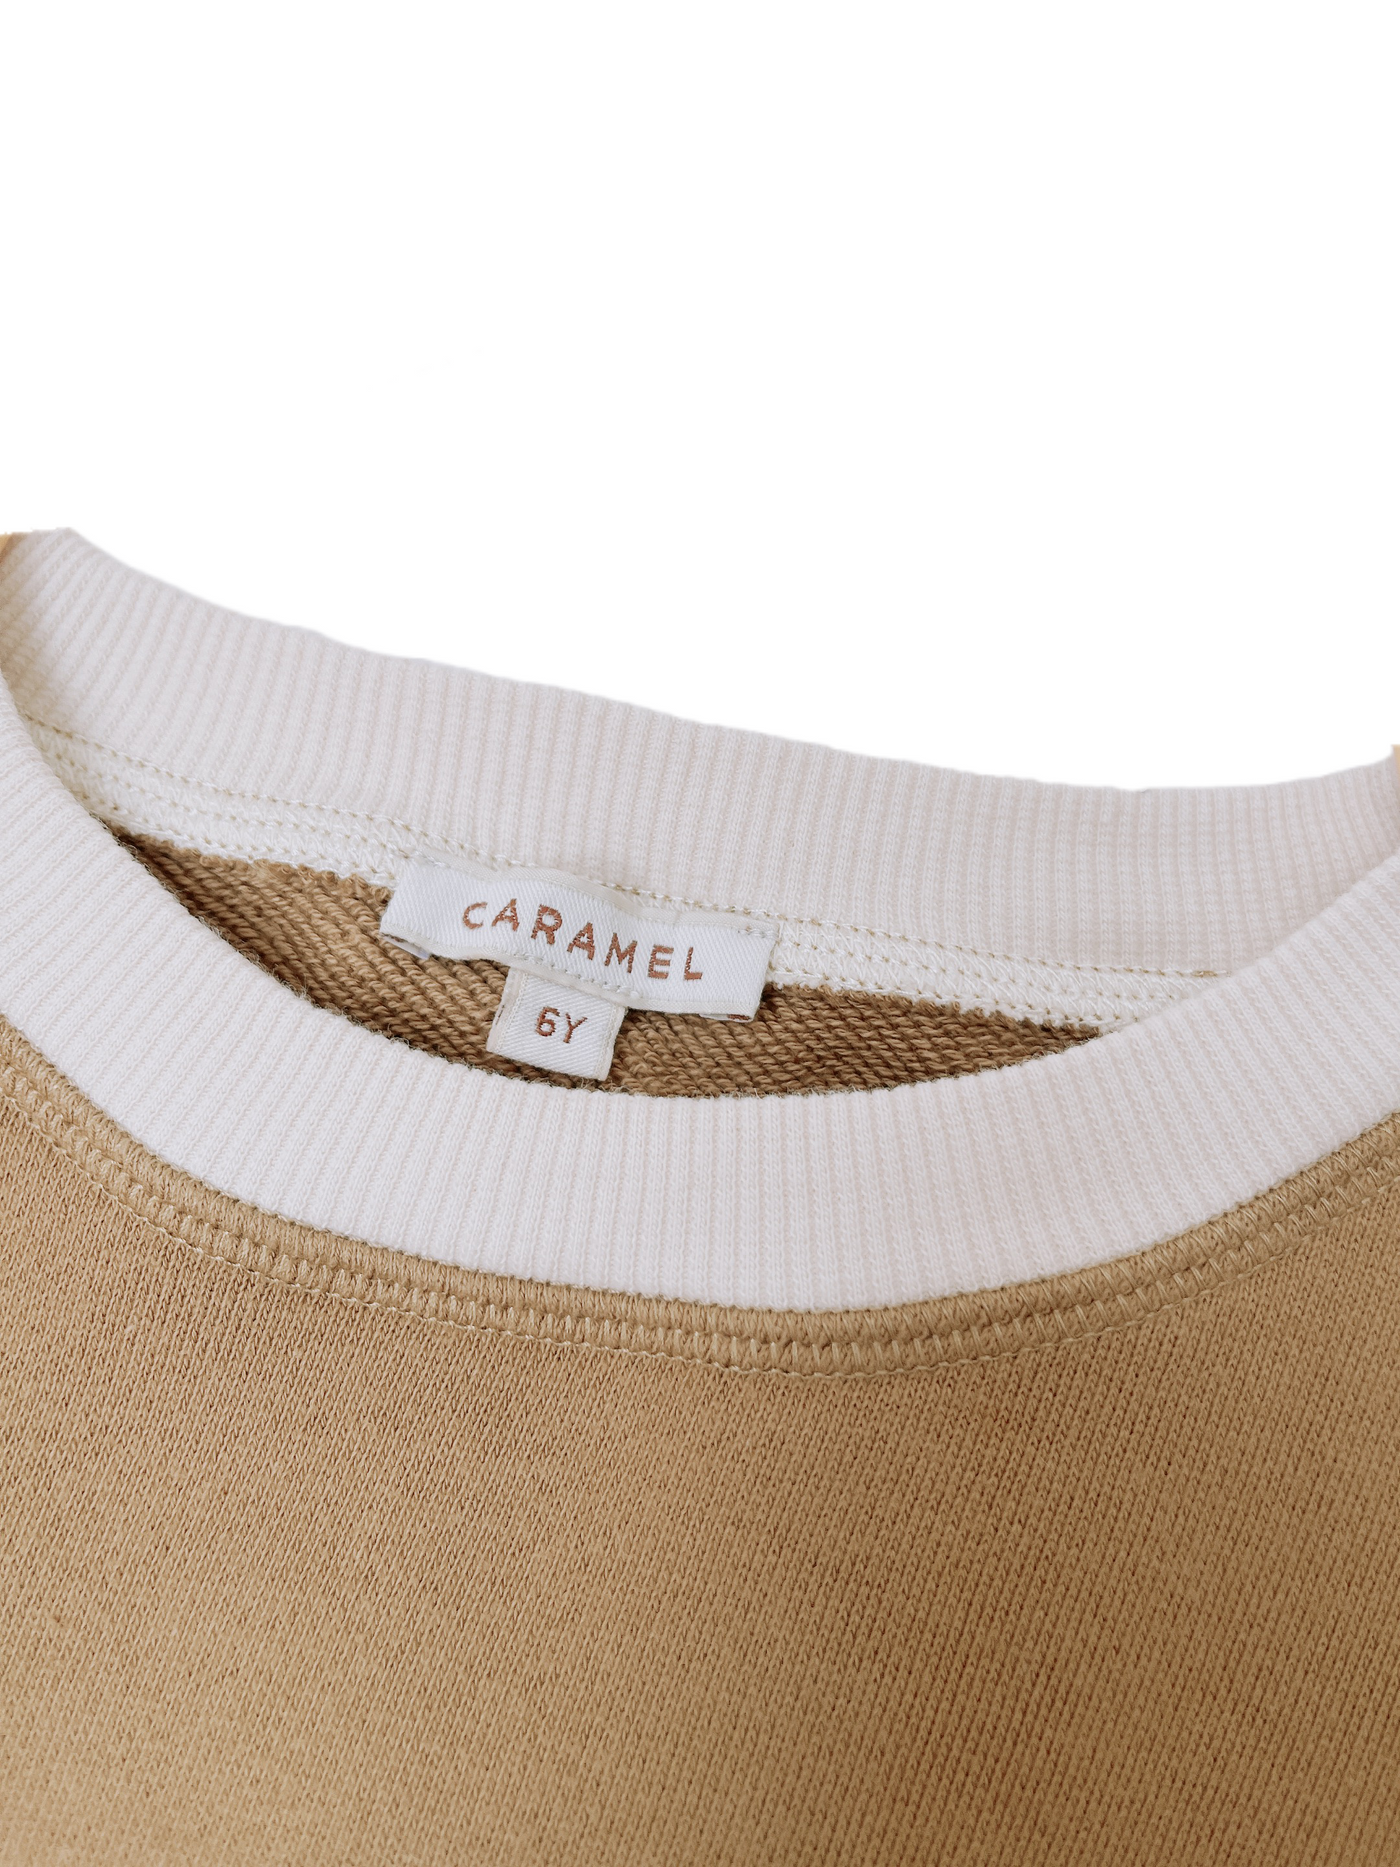 Caramel shortsleeve shirt(6Y)